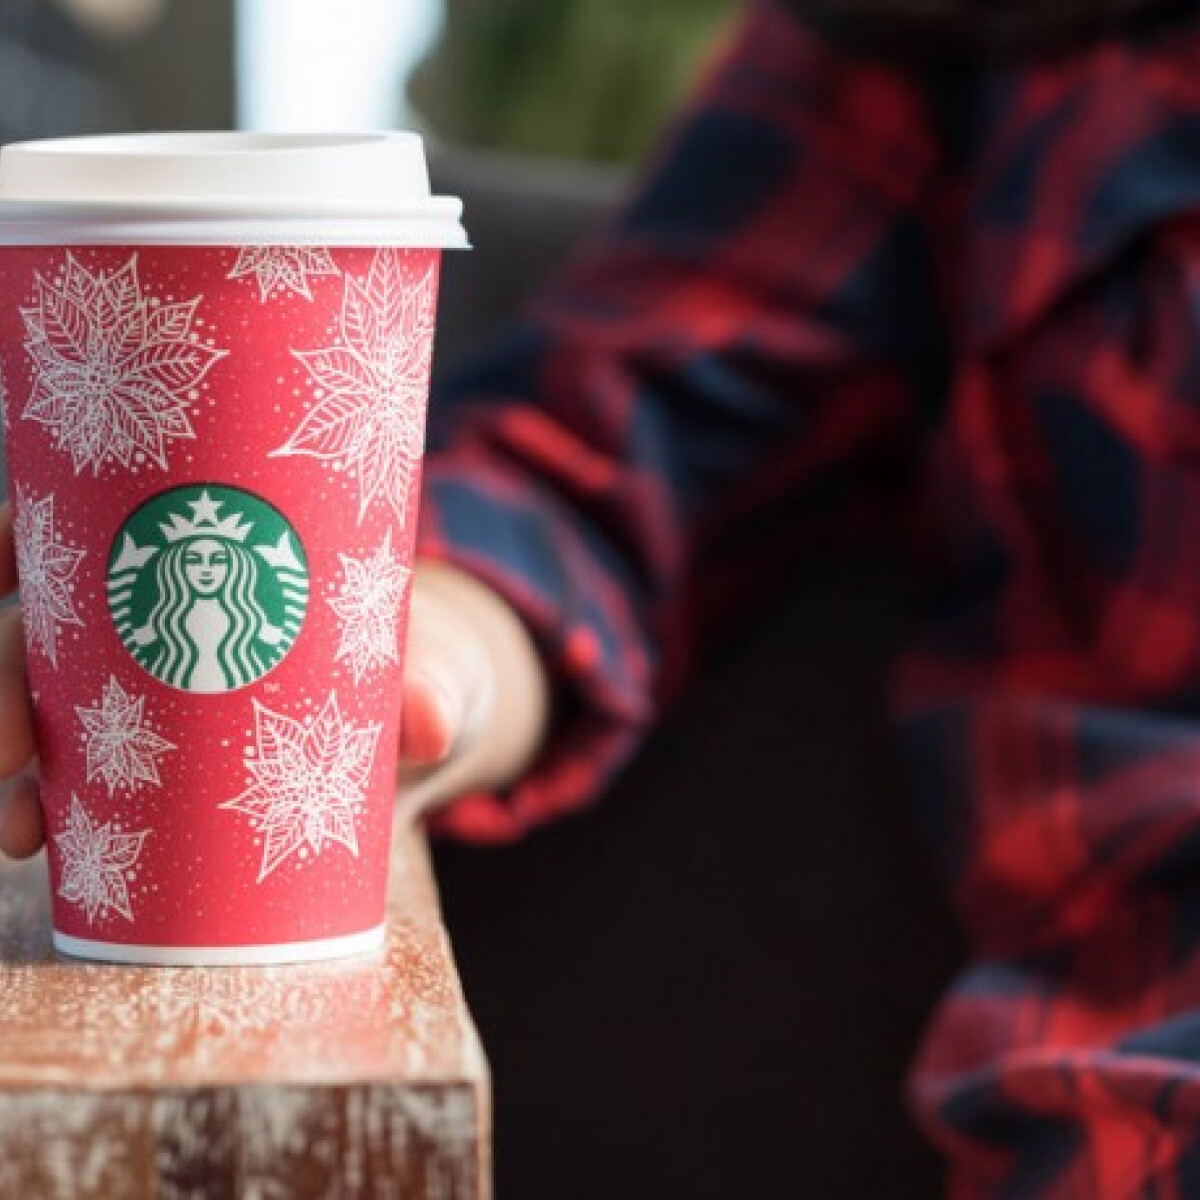 Kiderült, mennyibe kerül egy Starbucks-os kávé a világ különböző pontjain - durva különbségek vannak